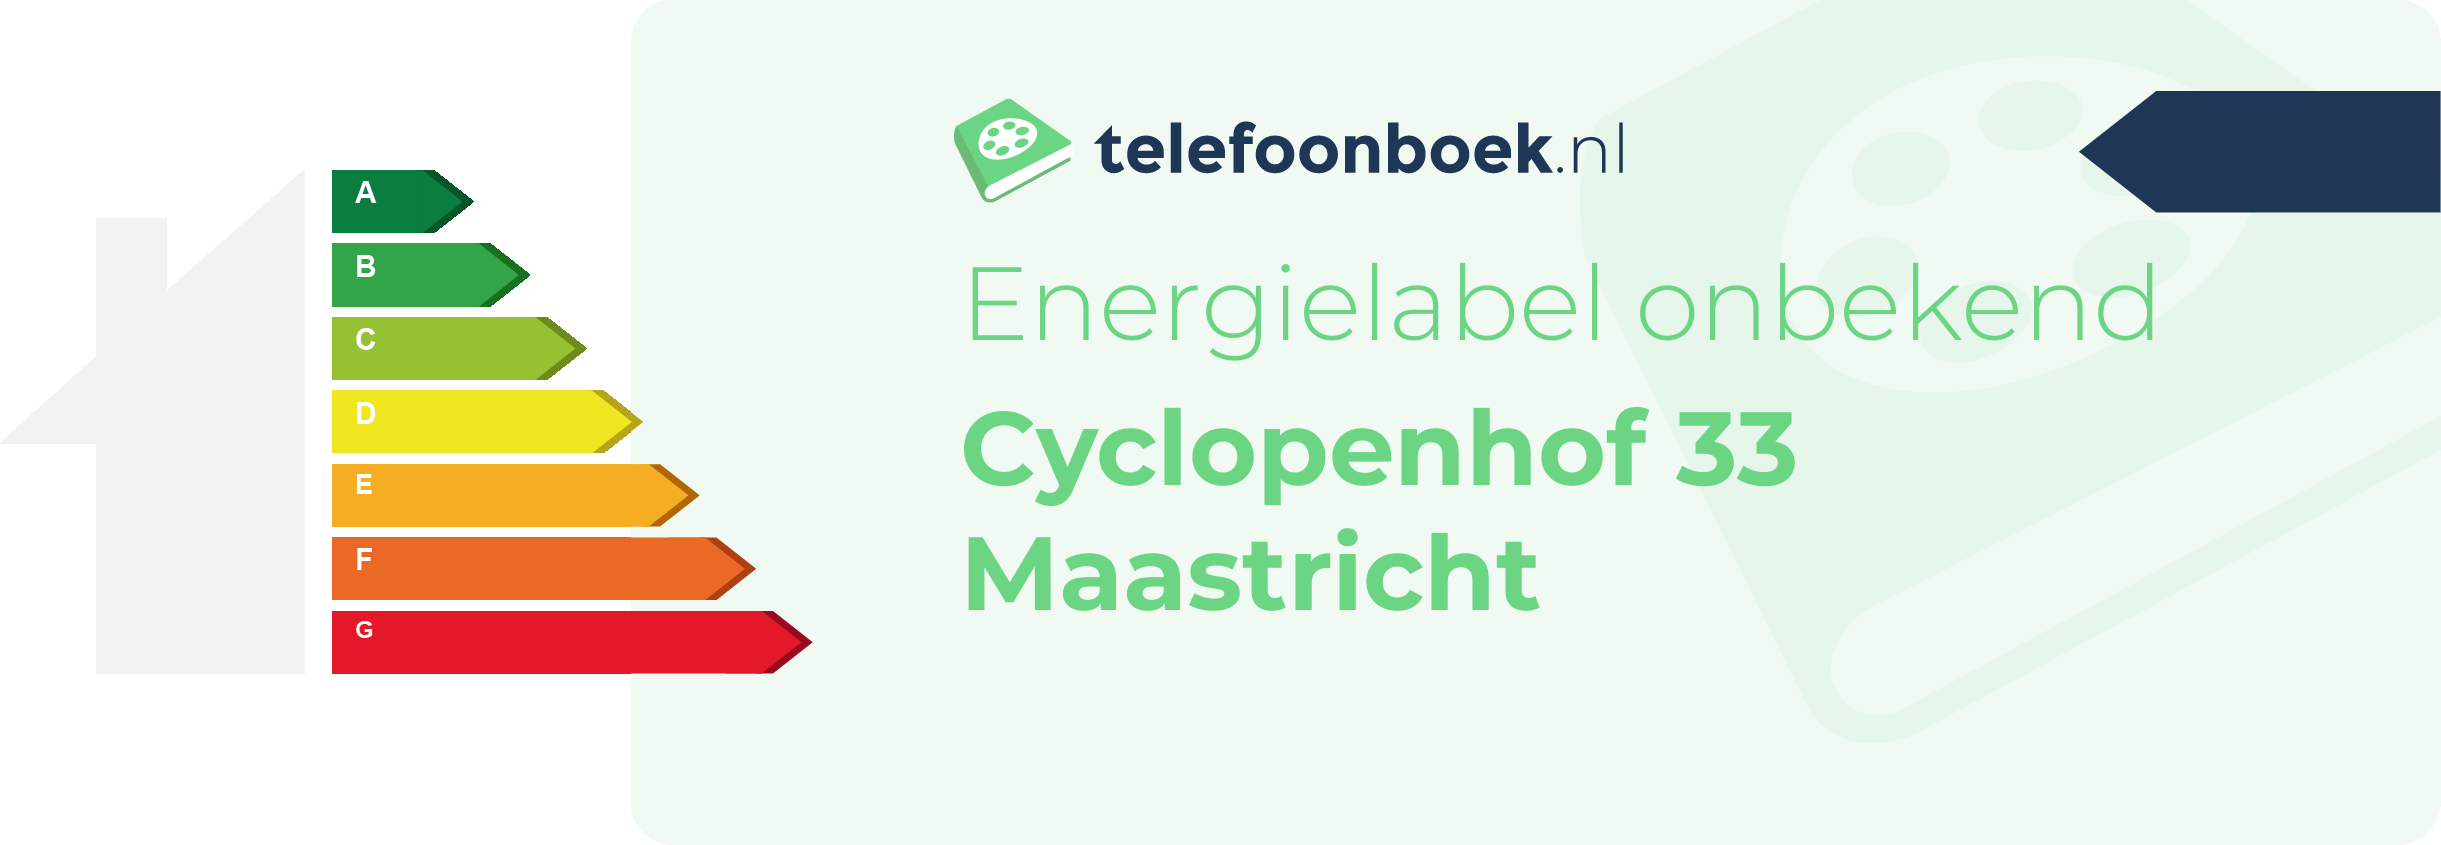 Energielabel Cyclopenhof 33 Maastricht